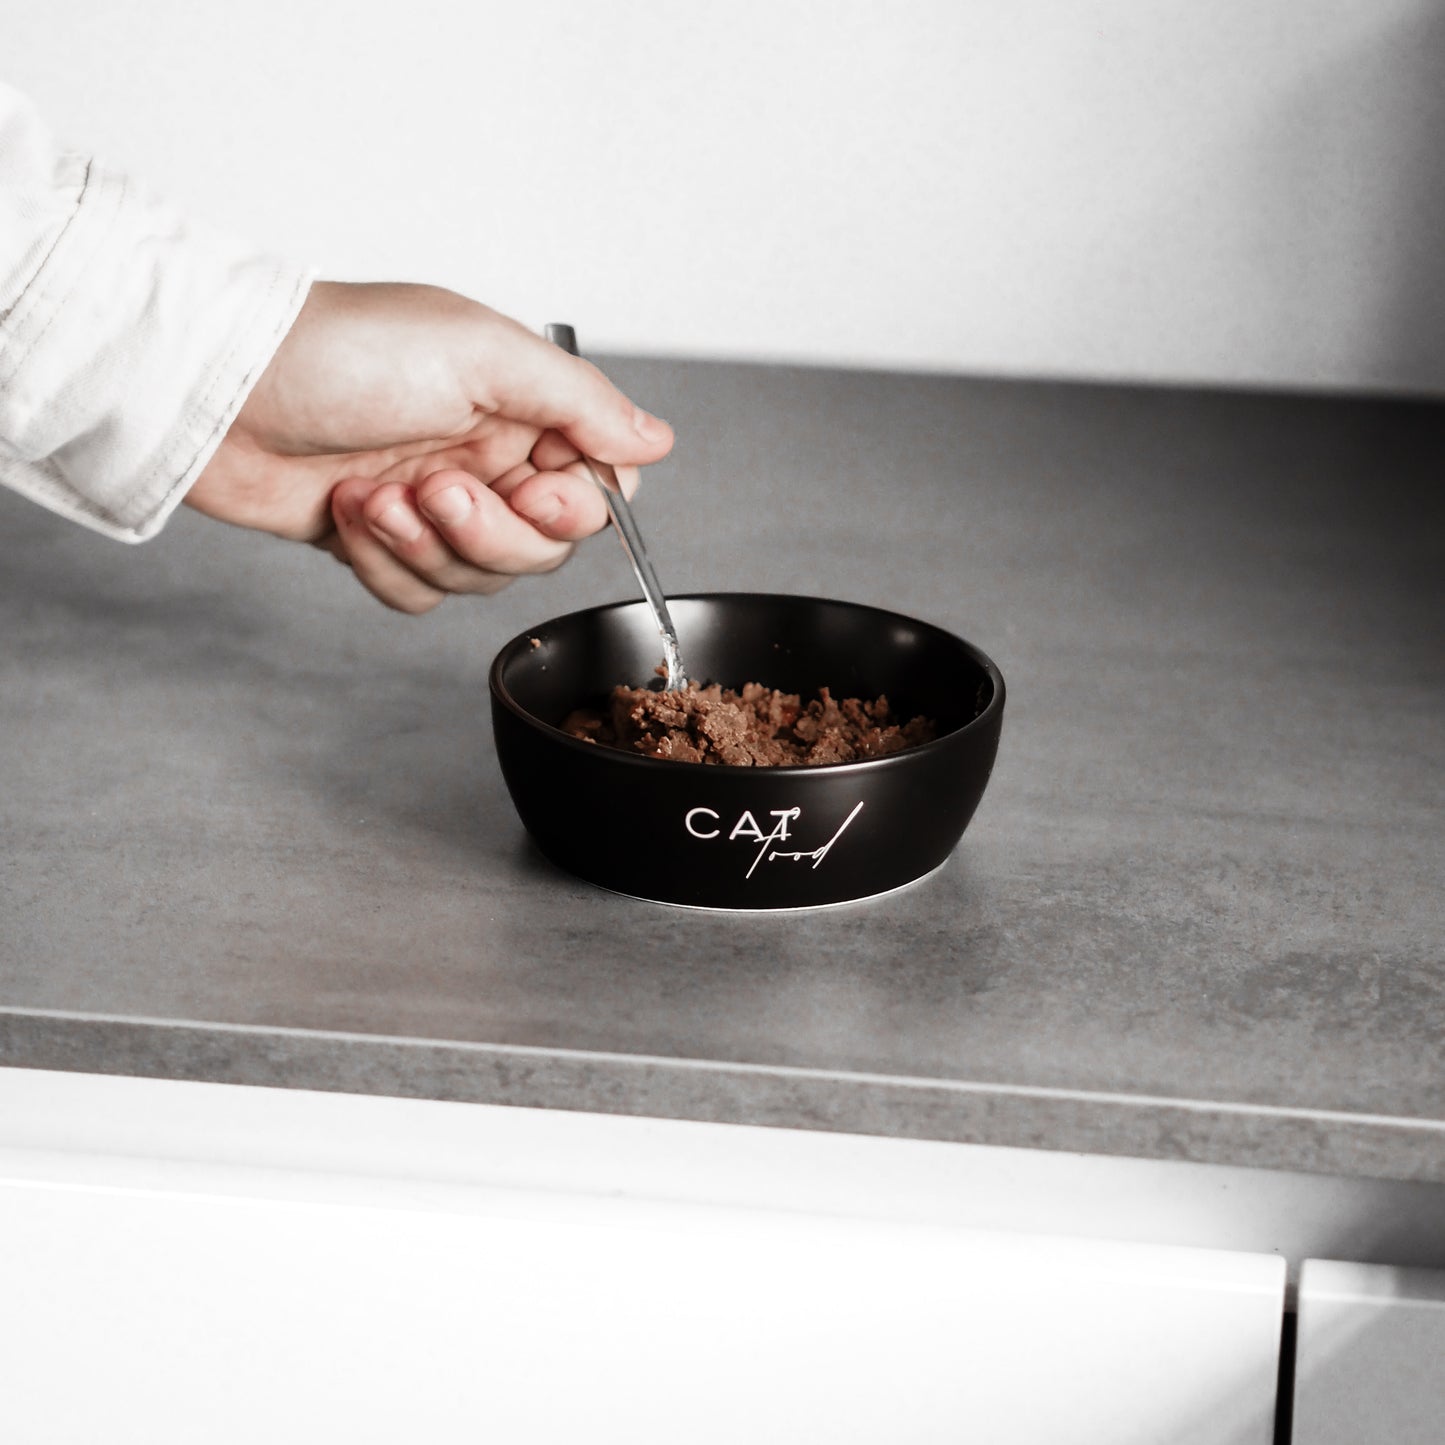 Nassfutter wird in einem schwarzen Katzennapf aus Keramik zur Fütterung der Fellnasen vorbereitet.